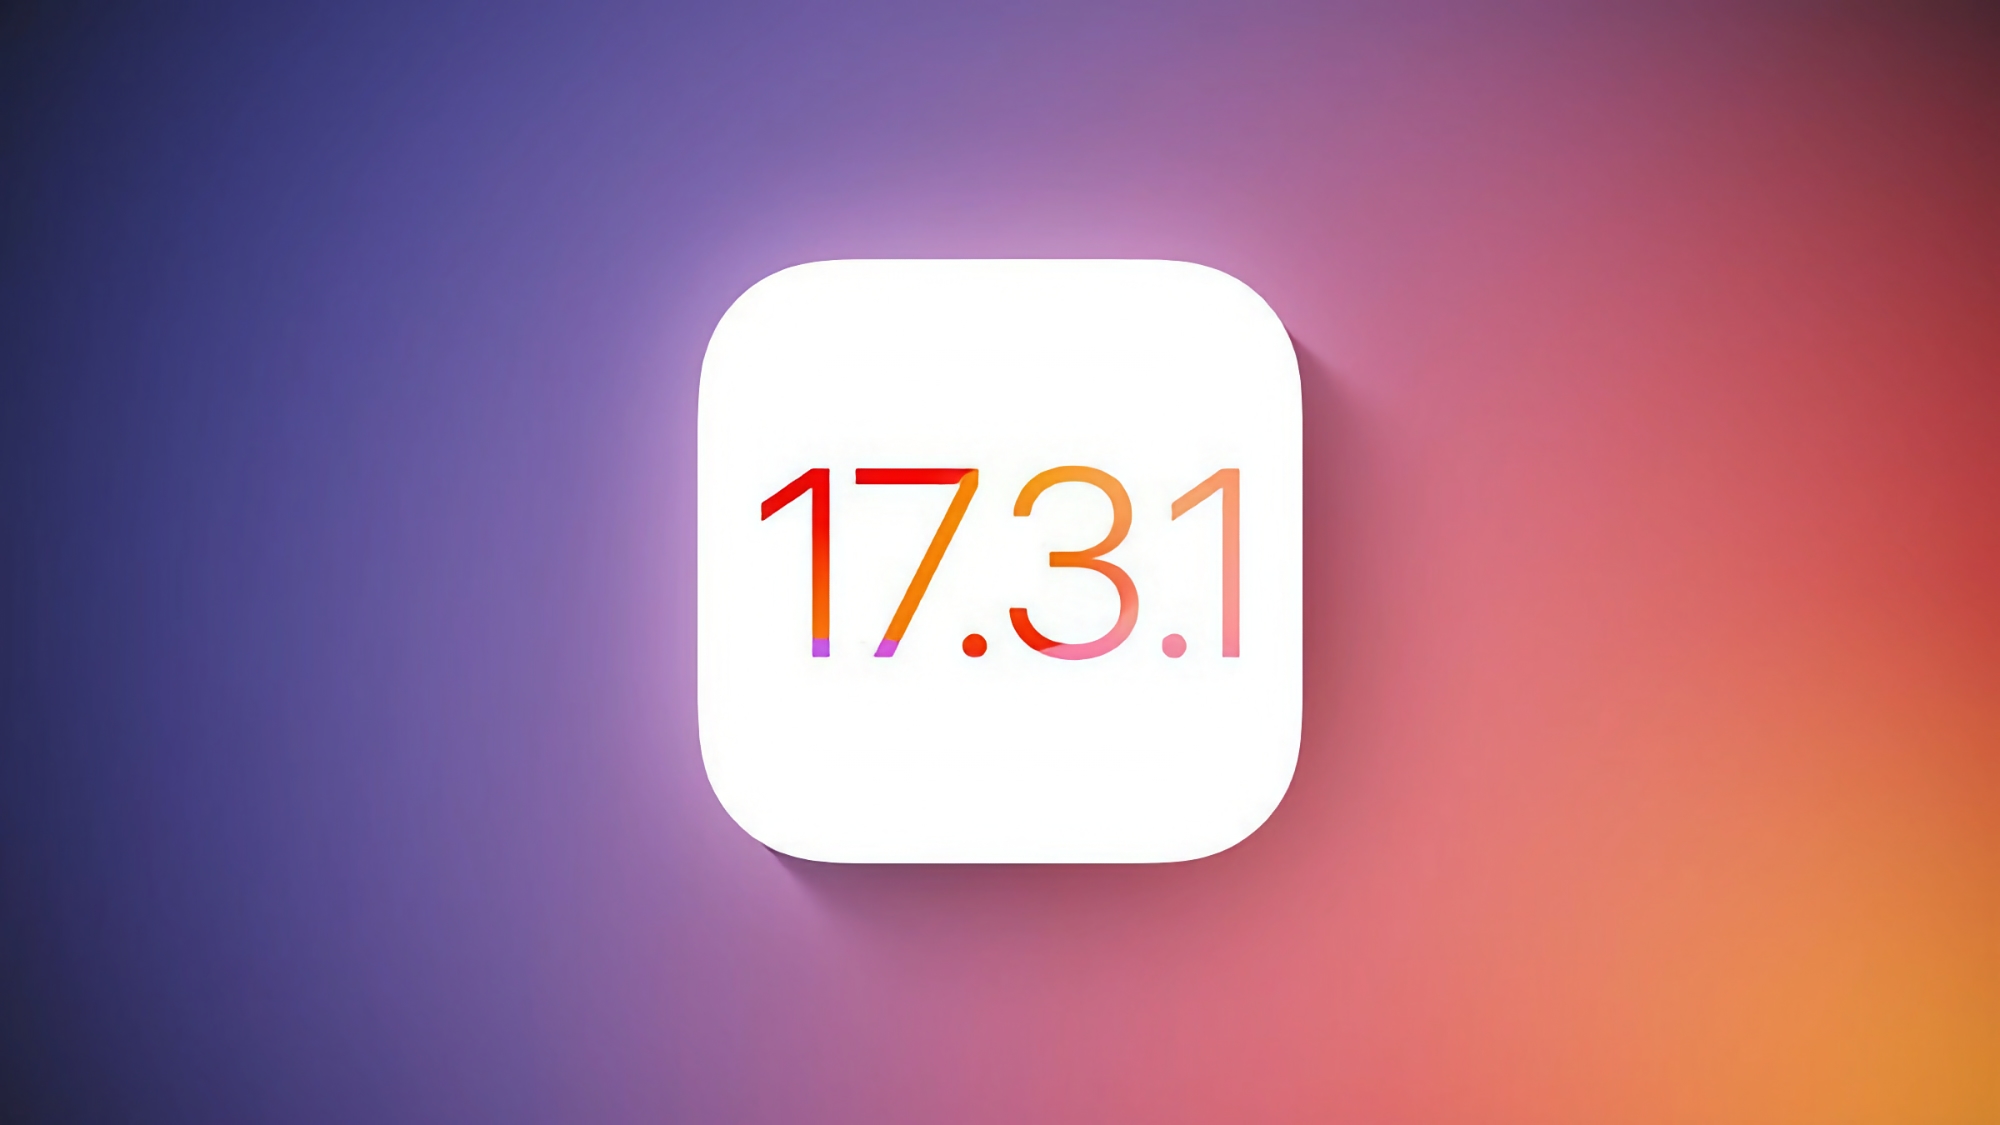 Apple випустила iOS 17.3.1 для користувачів iPhone: що нового